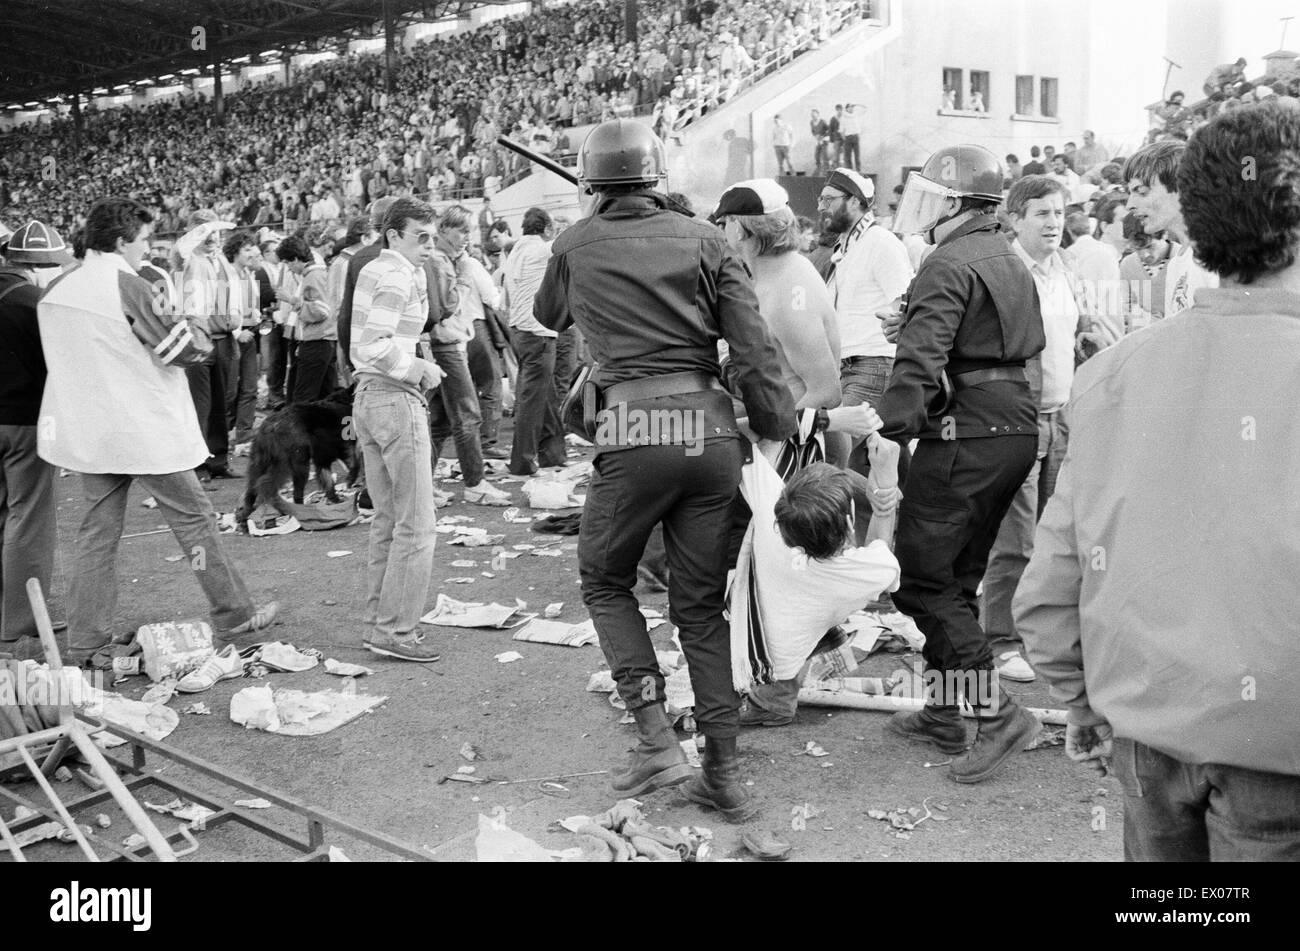 Attenzione : il contenuto grafico Juventus v Liverpool, 1985 European Cup Final, Heysel Stadium, Bruxelles, mercoledì 29 maggio 1985. Heysel Stadium disastro. 39 persone, per la maggior parte tifosi bianconeri, morì quando la fuga dei missili essendo generata da entrambi i gruppi di tifosi in tutta una na Foto Stock